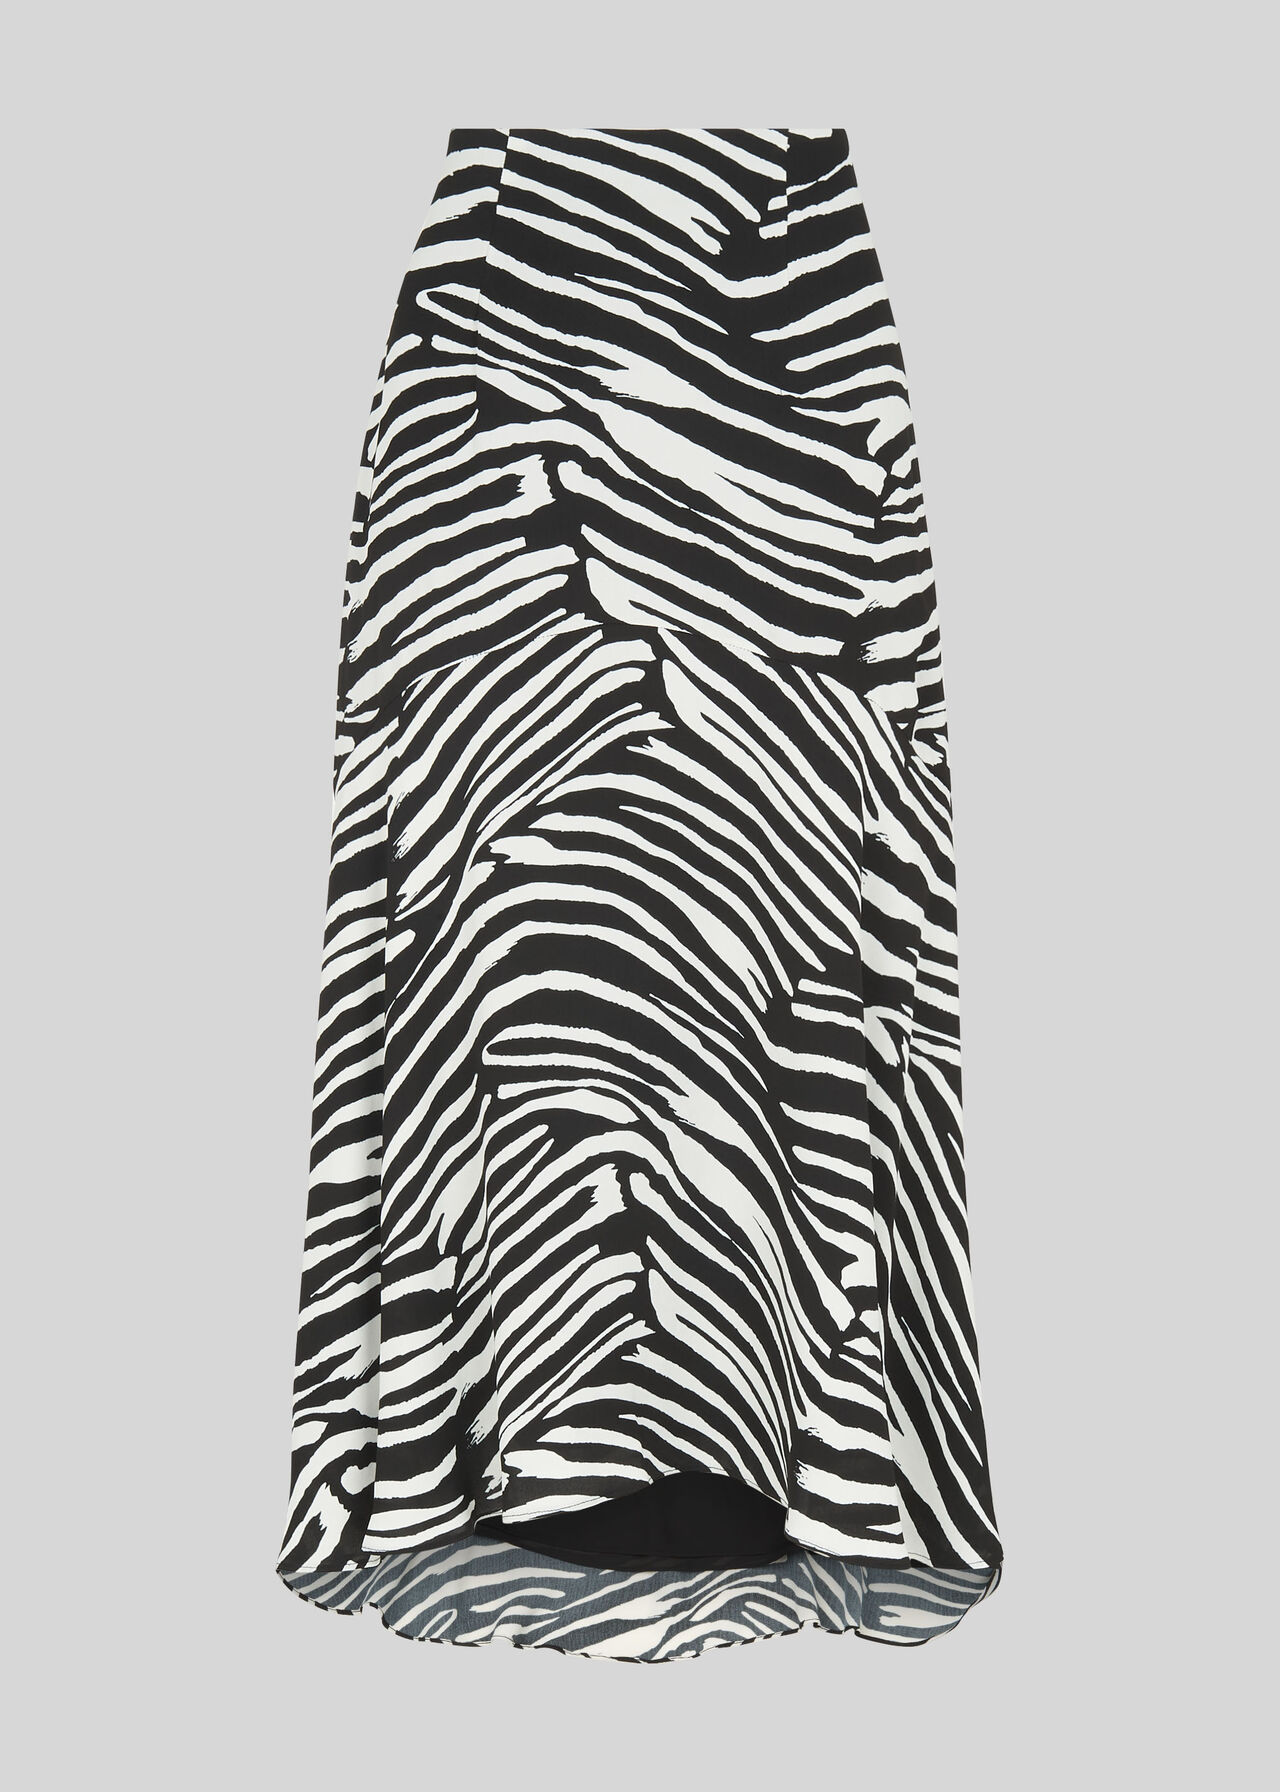 Black And White Zebra Print Skirt | WHISTLES